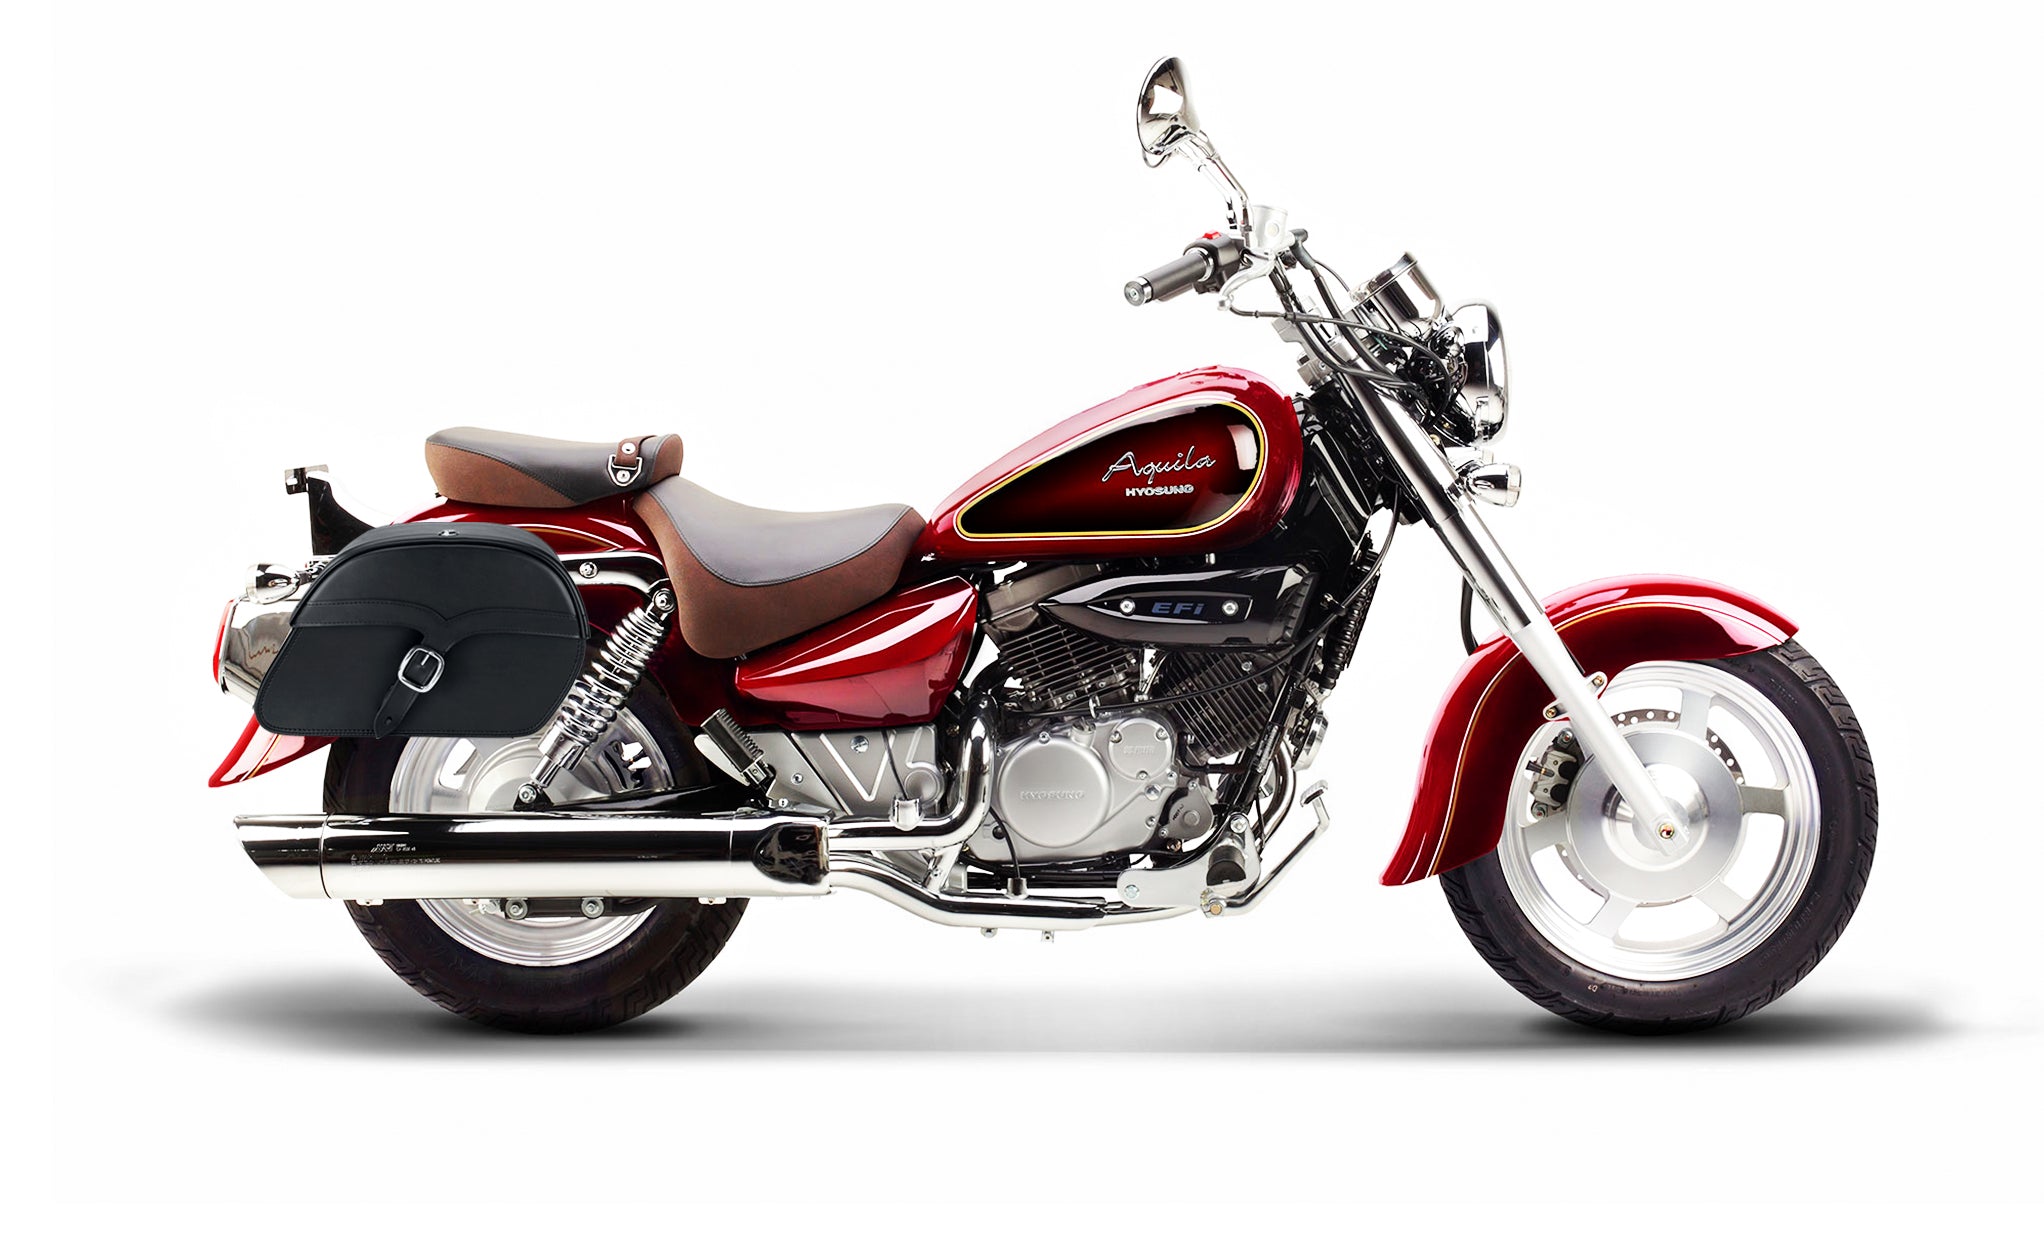 Viking Vintage Medium Hyosung Aquila Gv 250 Leather Motorcycle Saddlebags on Bike Photo @expand